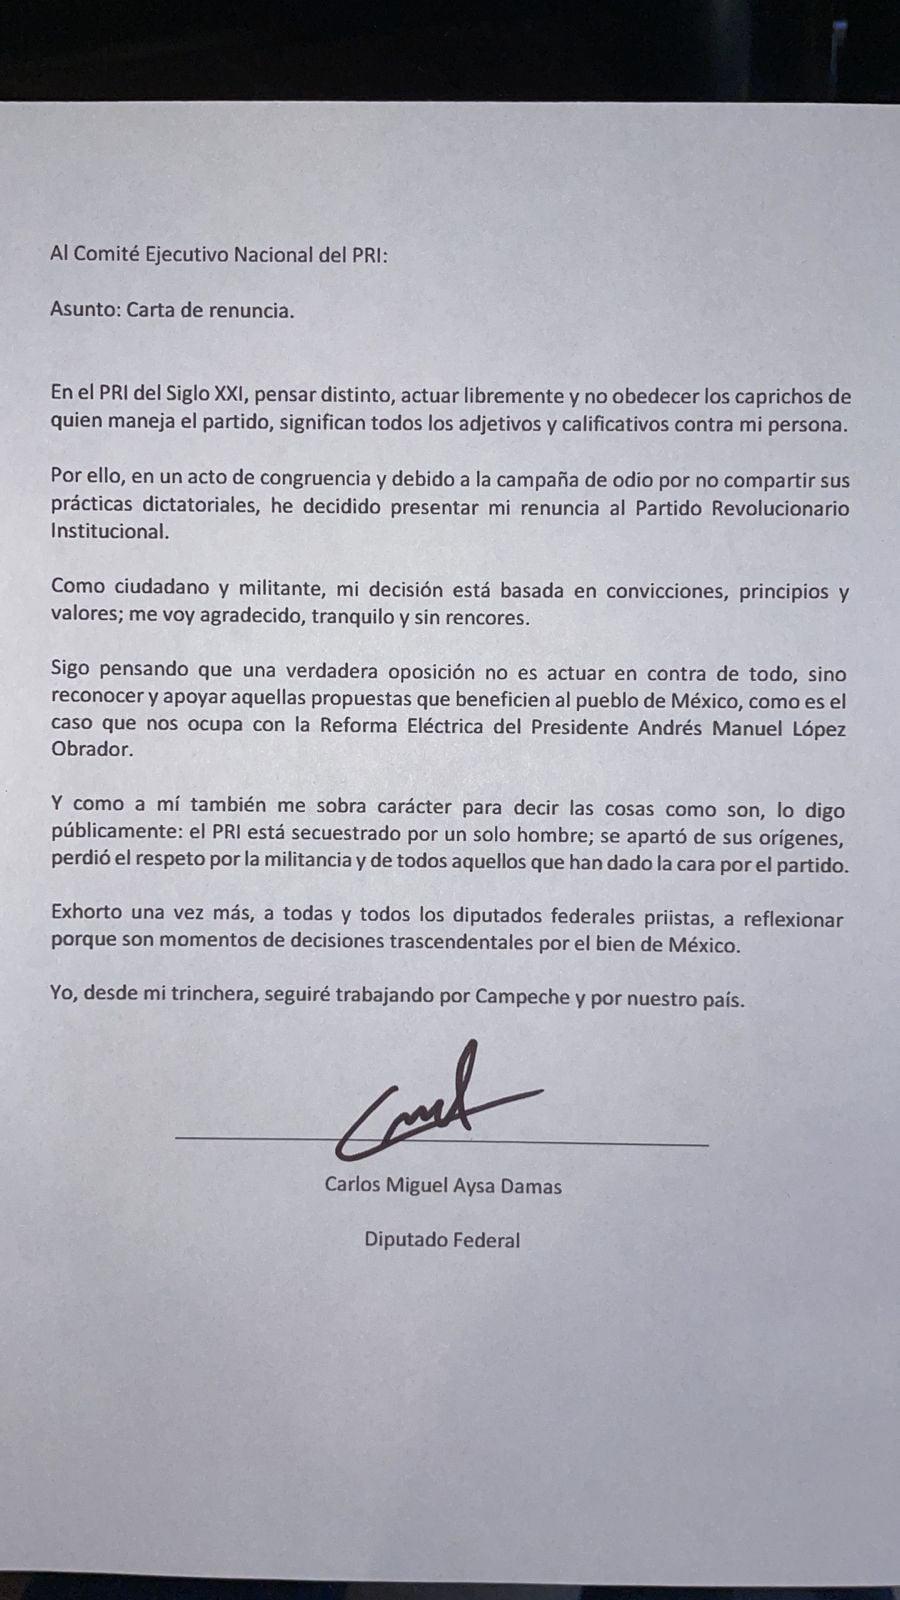 $!Carlos Miguel Aysa Damas renuncia al PRI y es presentado en la bancada de Morena